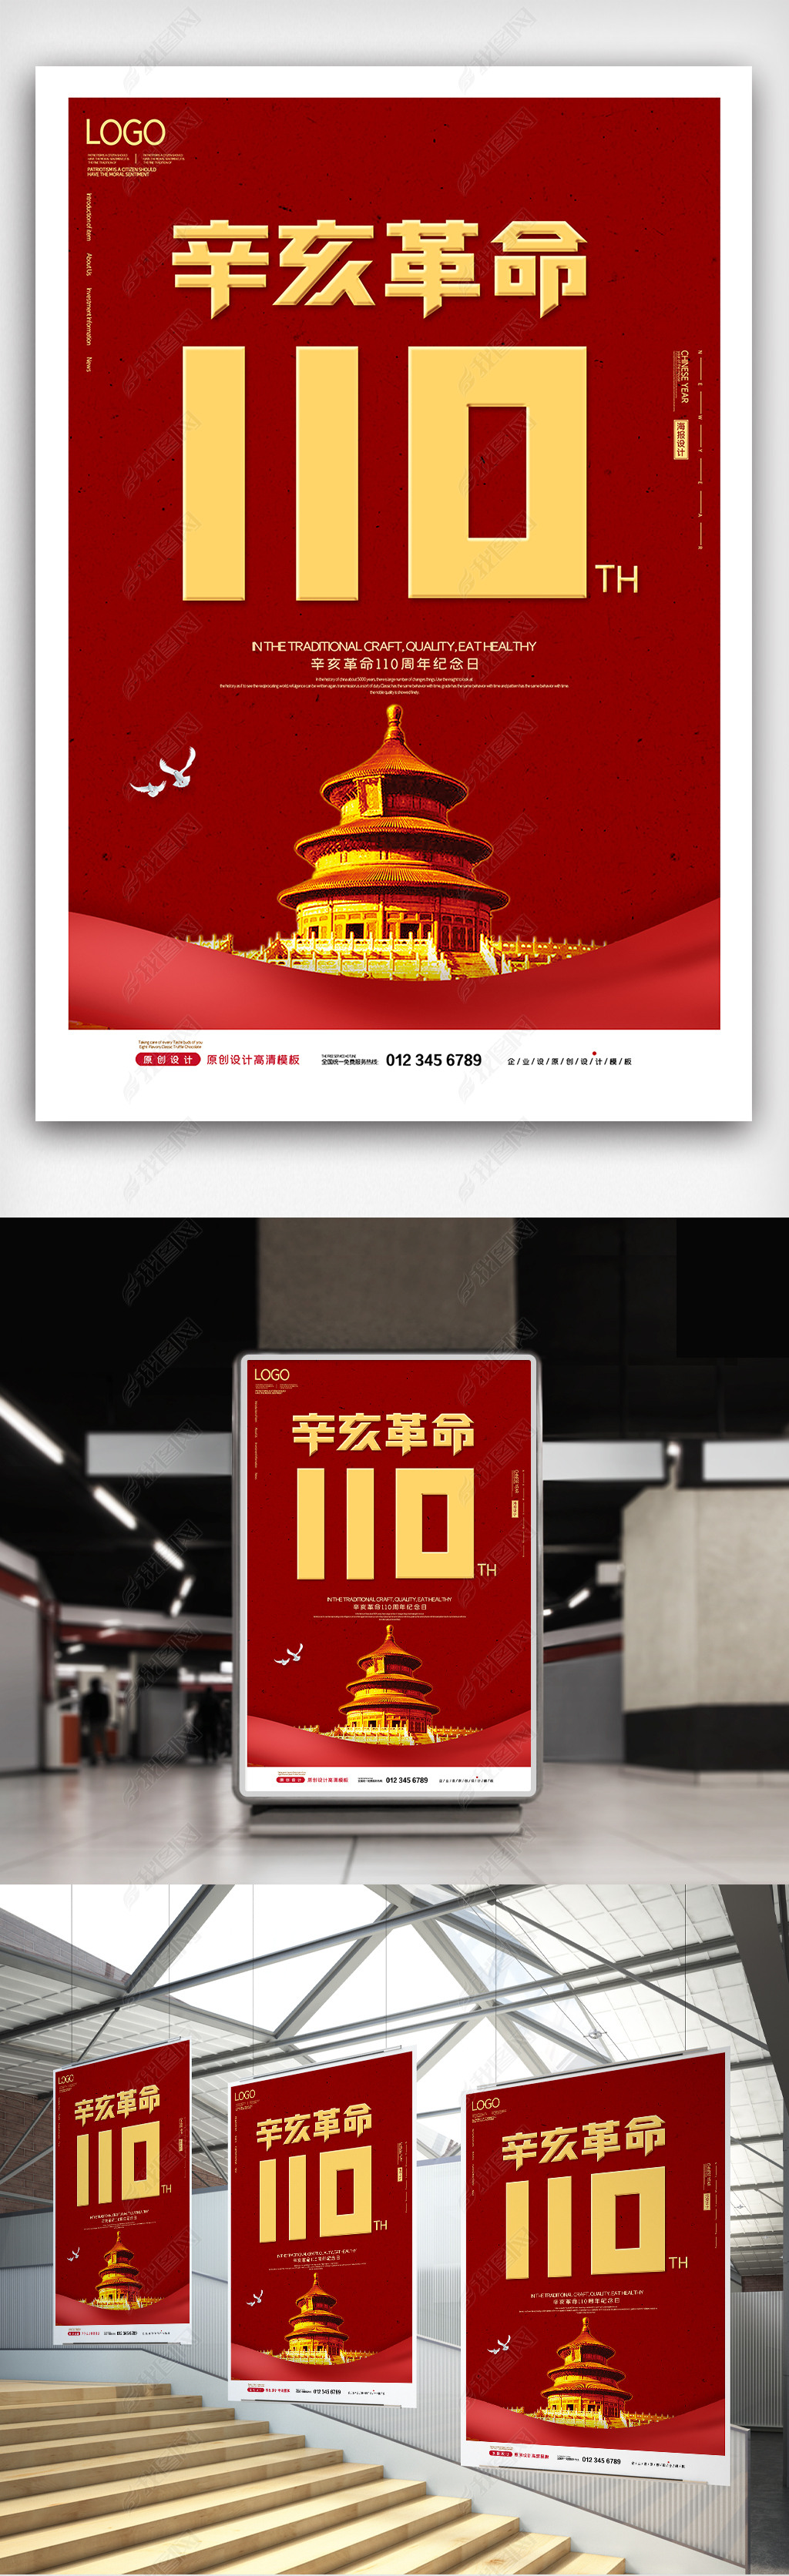 2021简约辛亥革命110周年纪念日海报